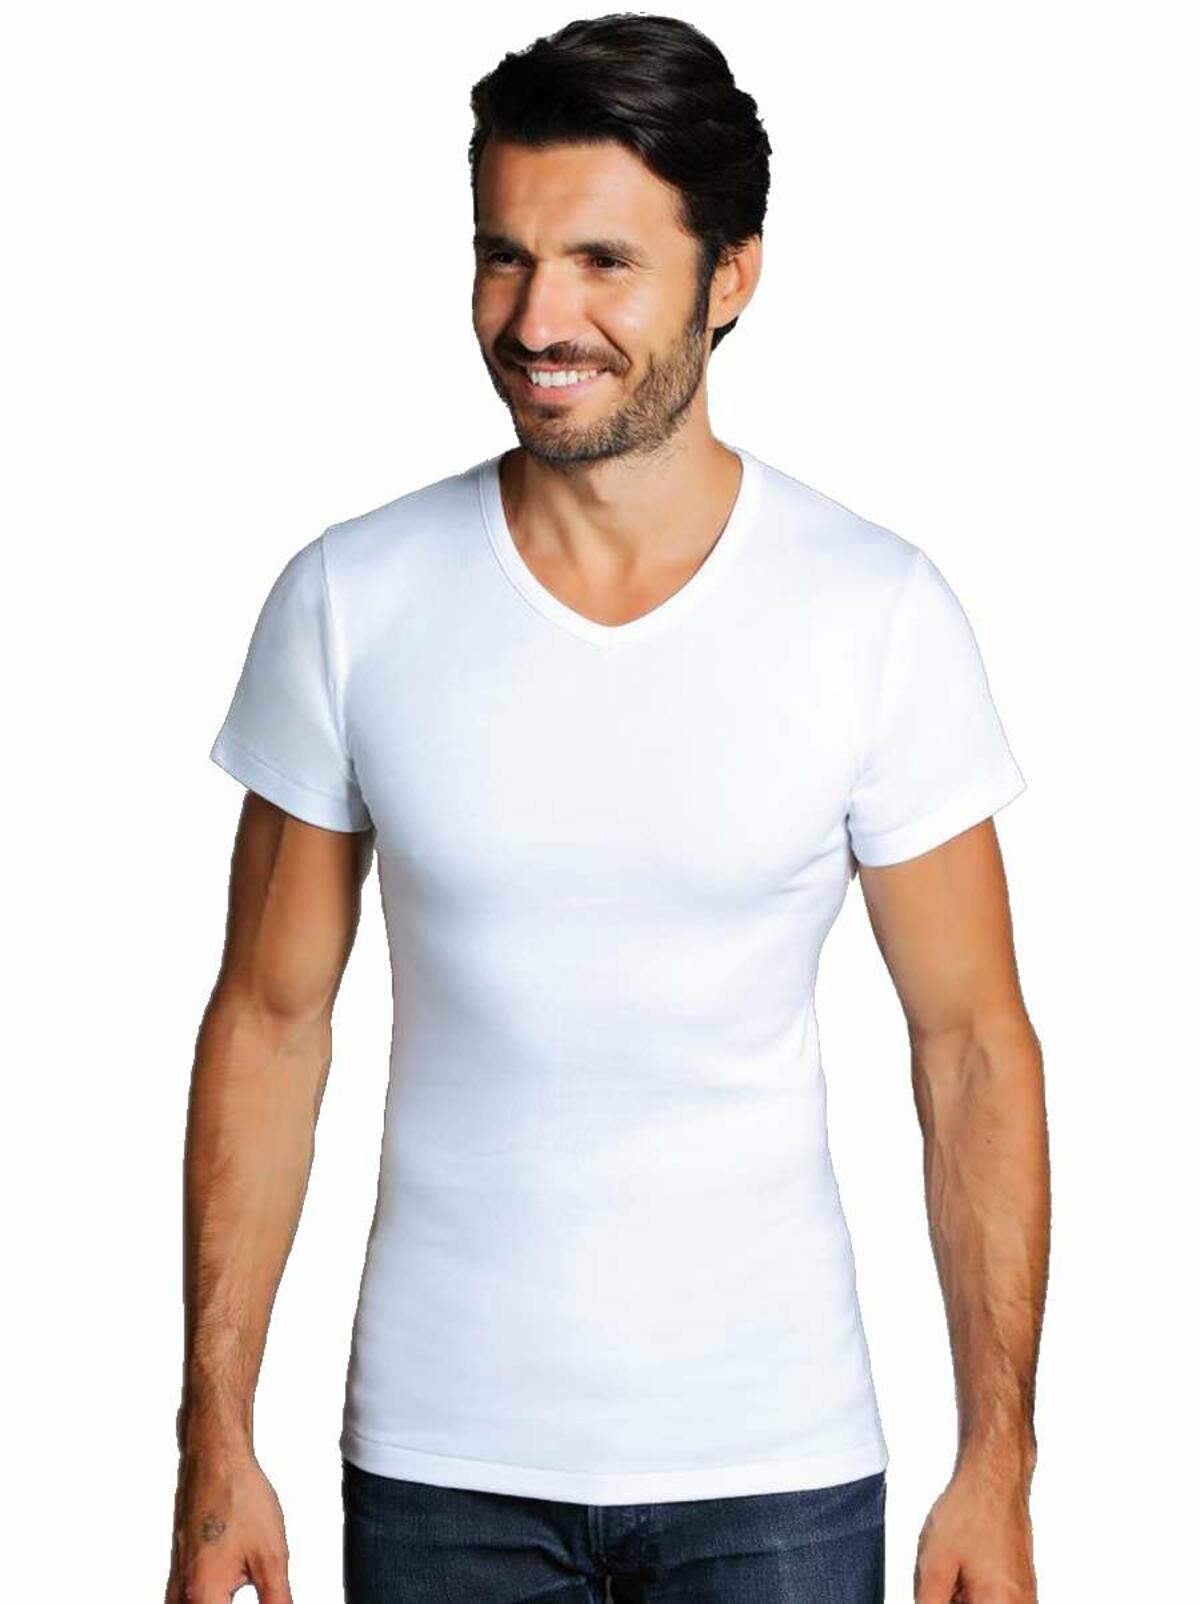 Men's V-shaped fleece cotton T-SHIRT Giovanni Rosanna 71 WHITE - CIAM